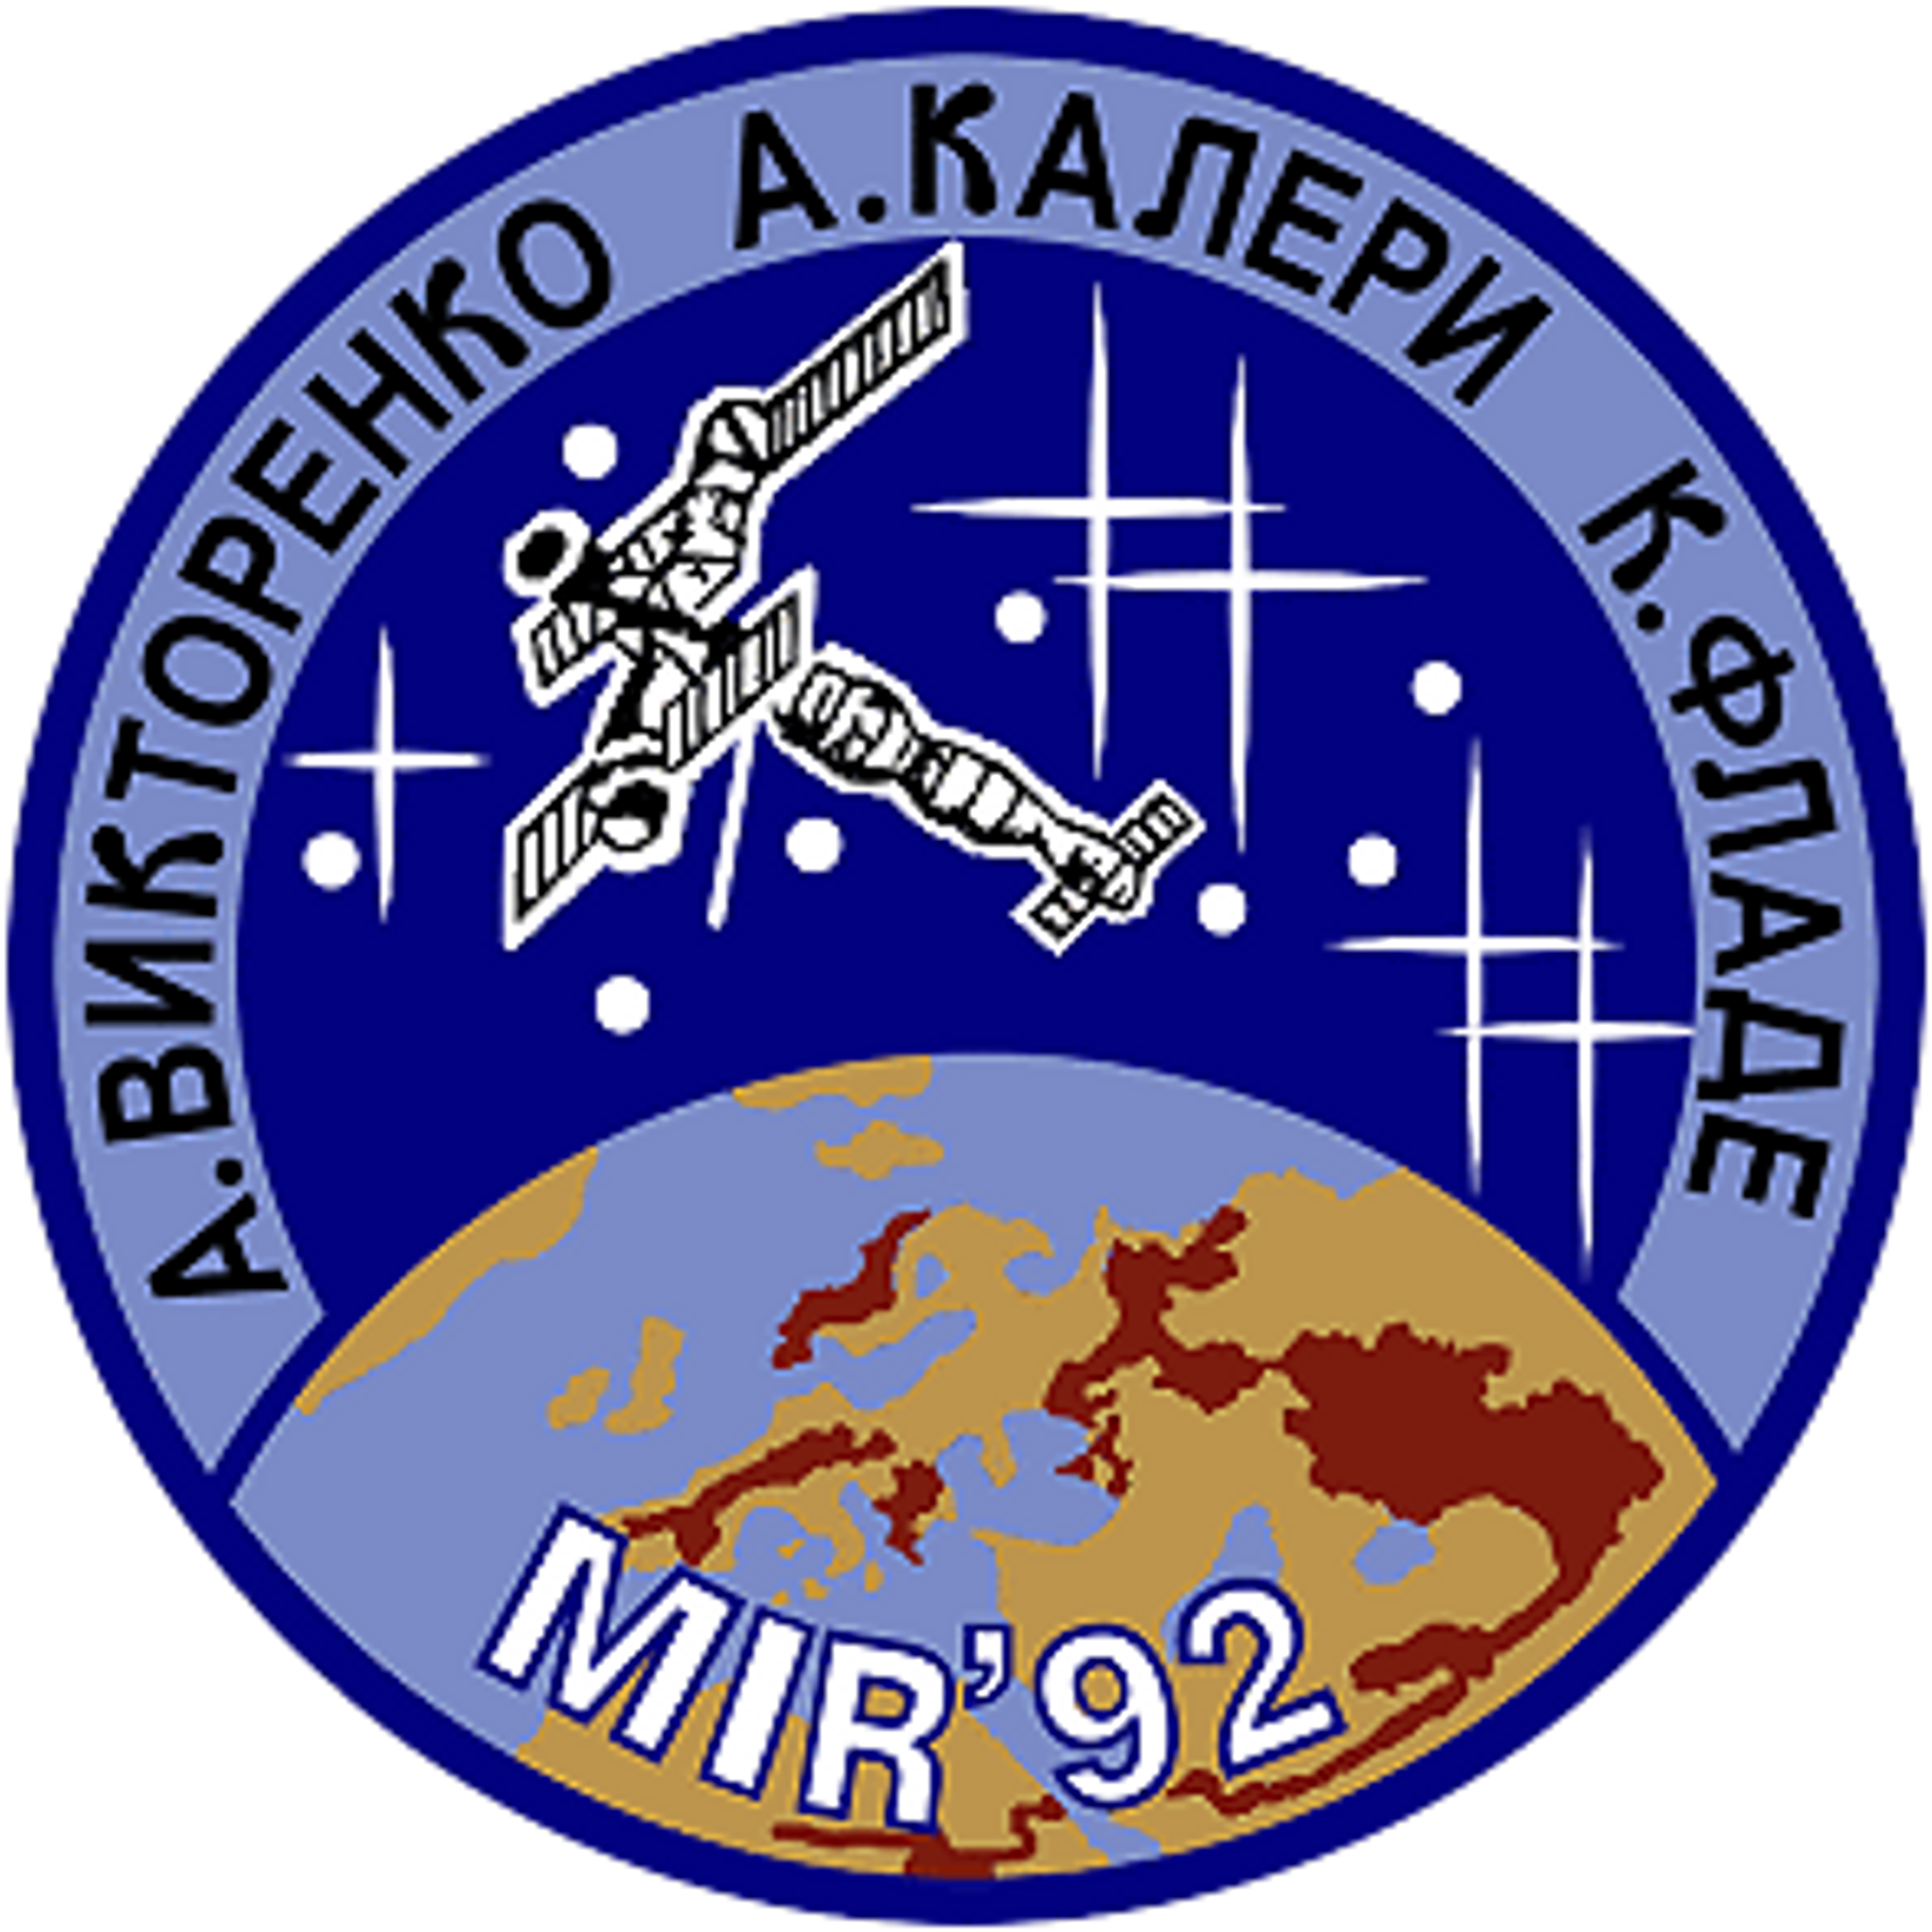 Soyuz TM-14